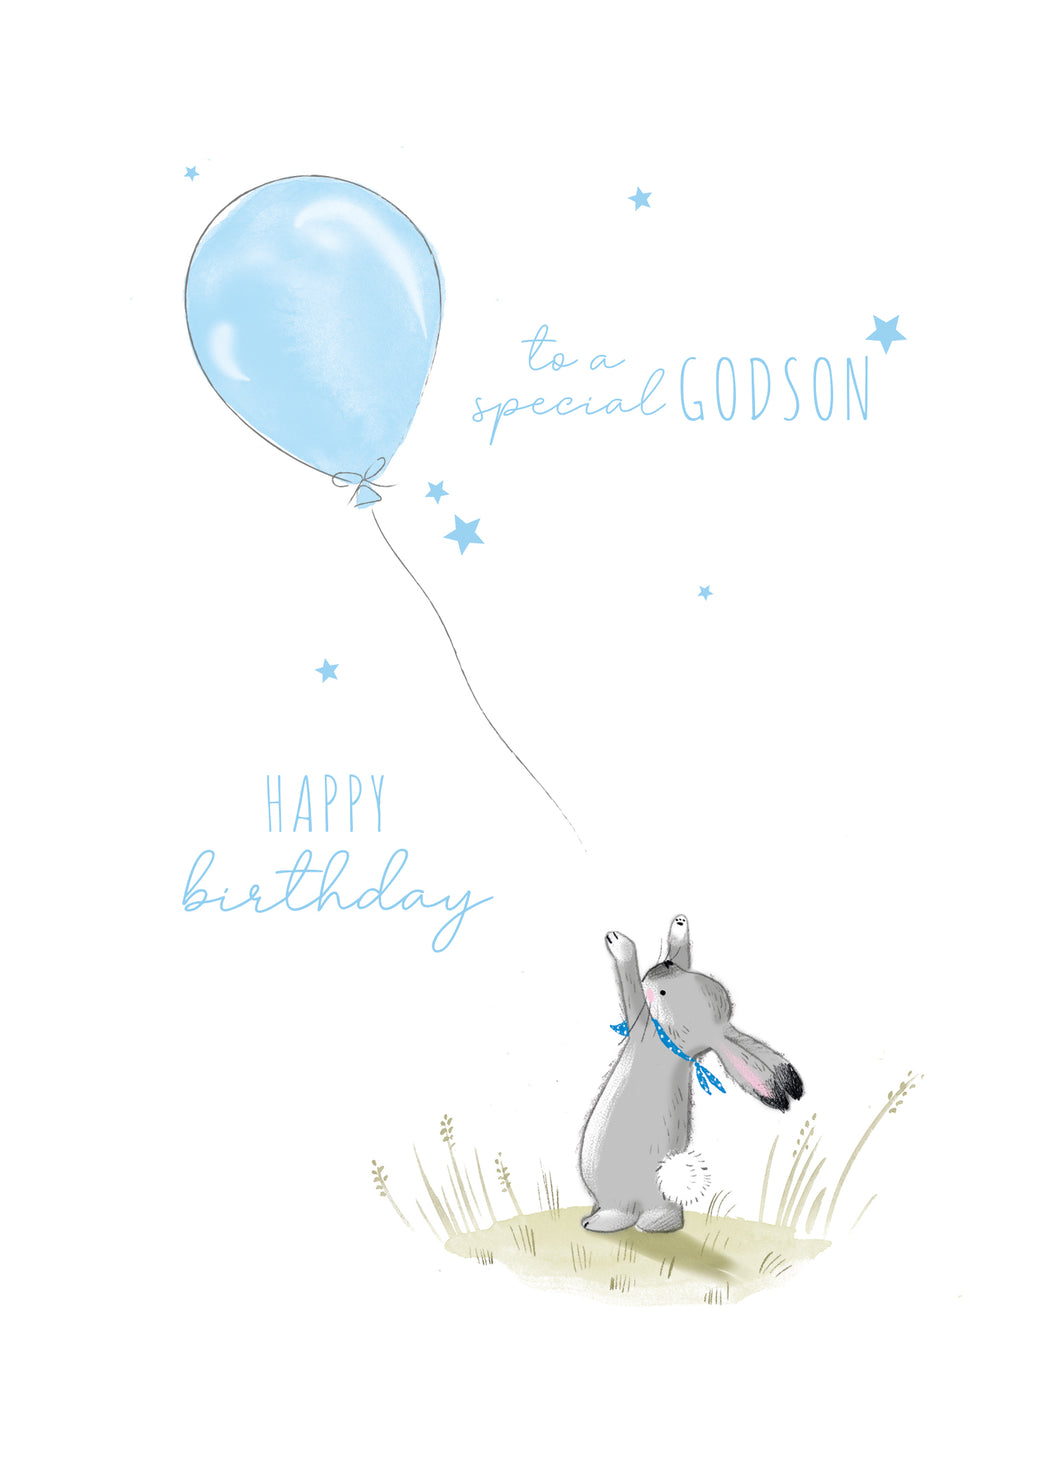 Godson Birthday Card - Birthday Card